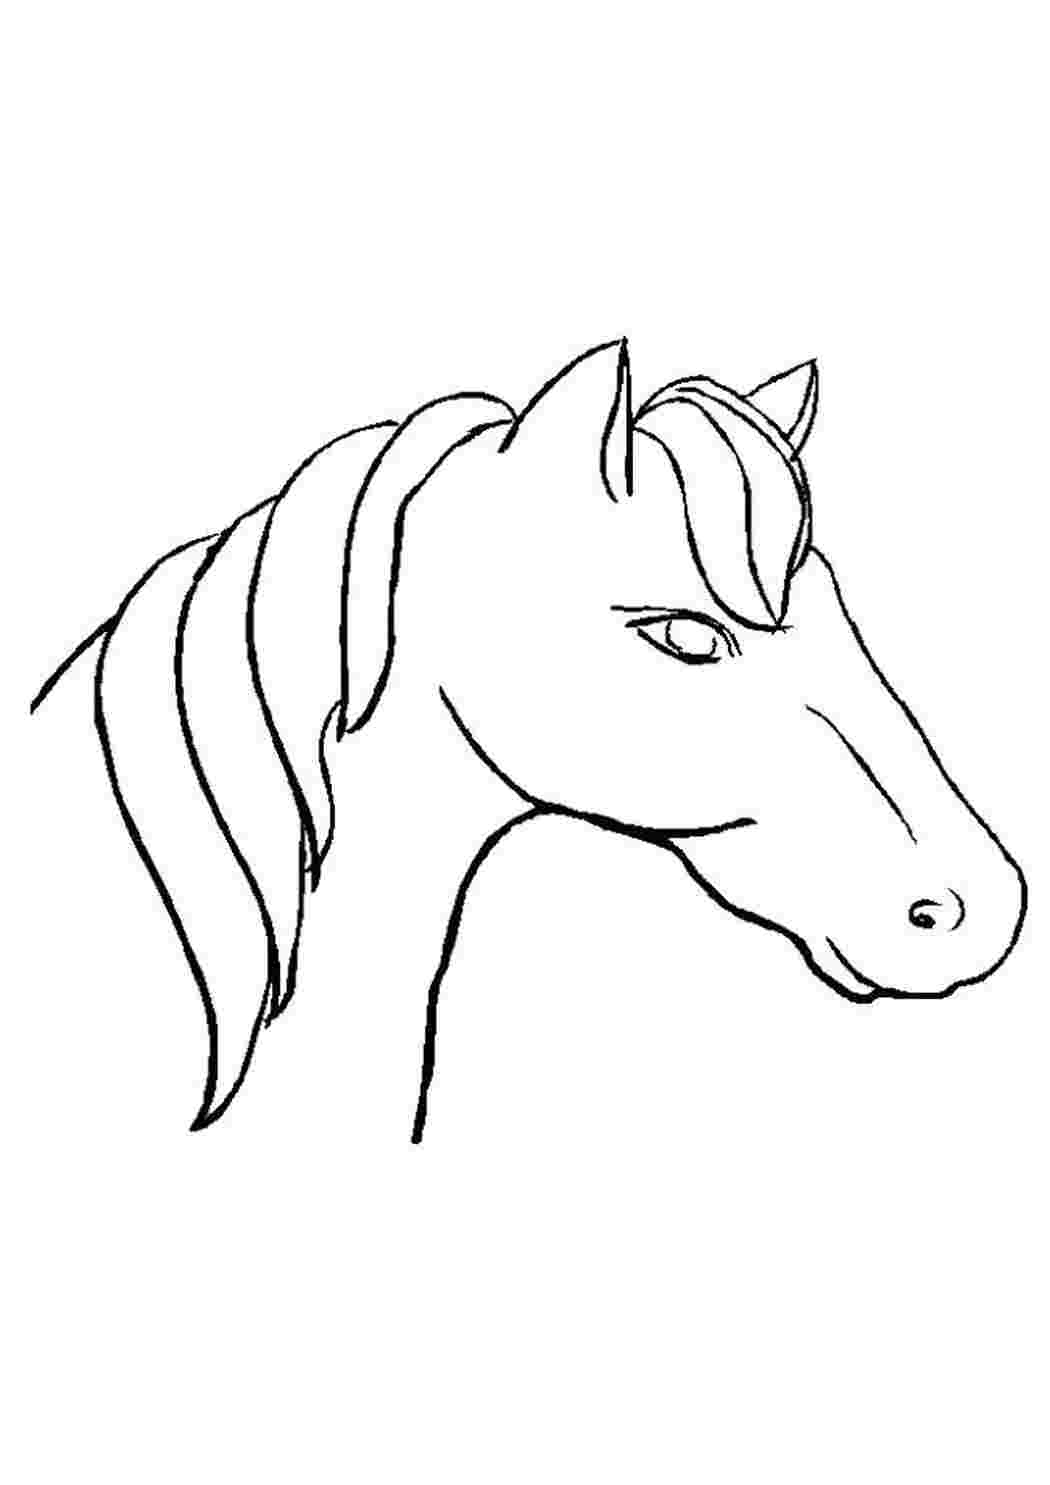 Раскраска лошадь: векторные изображения и иллюстрации, которые можно скачать бесплатно | Freepik